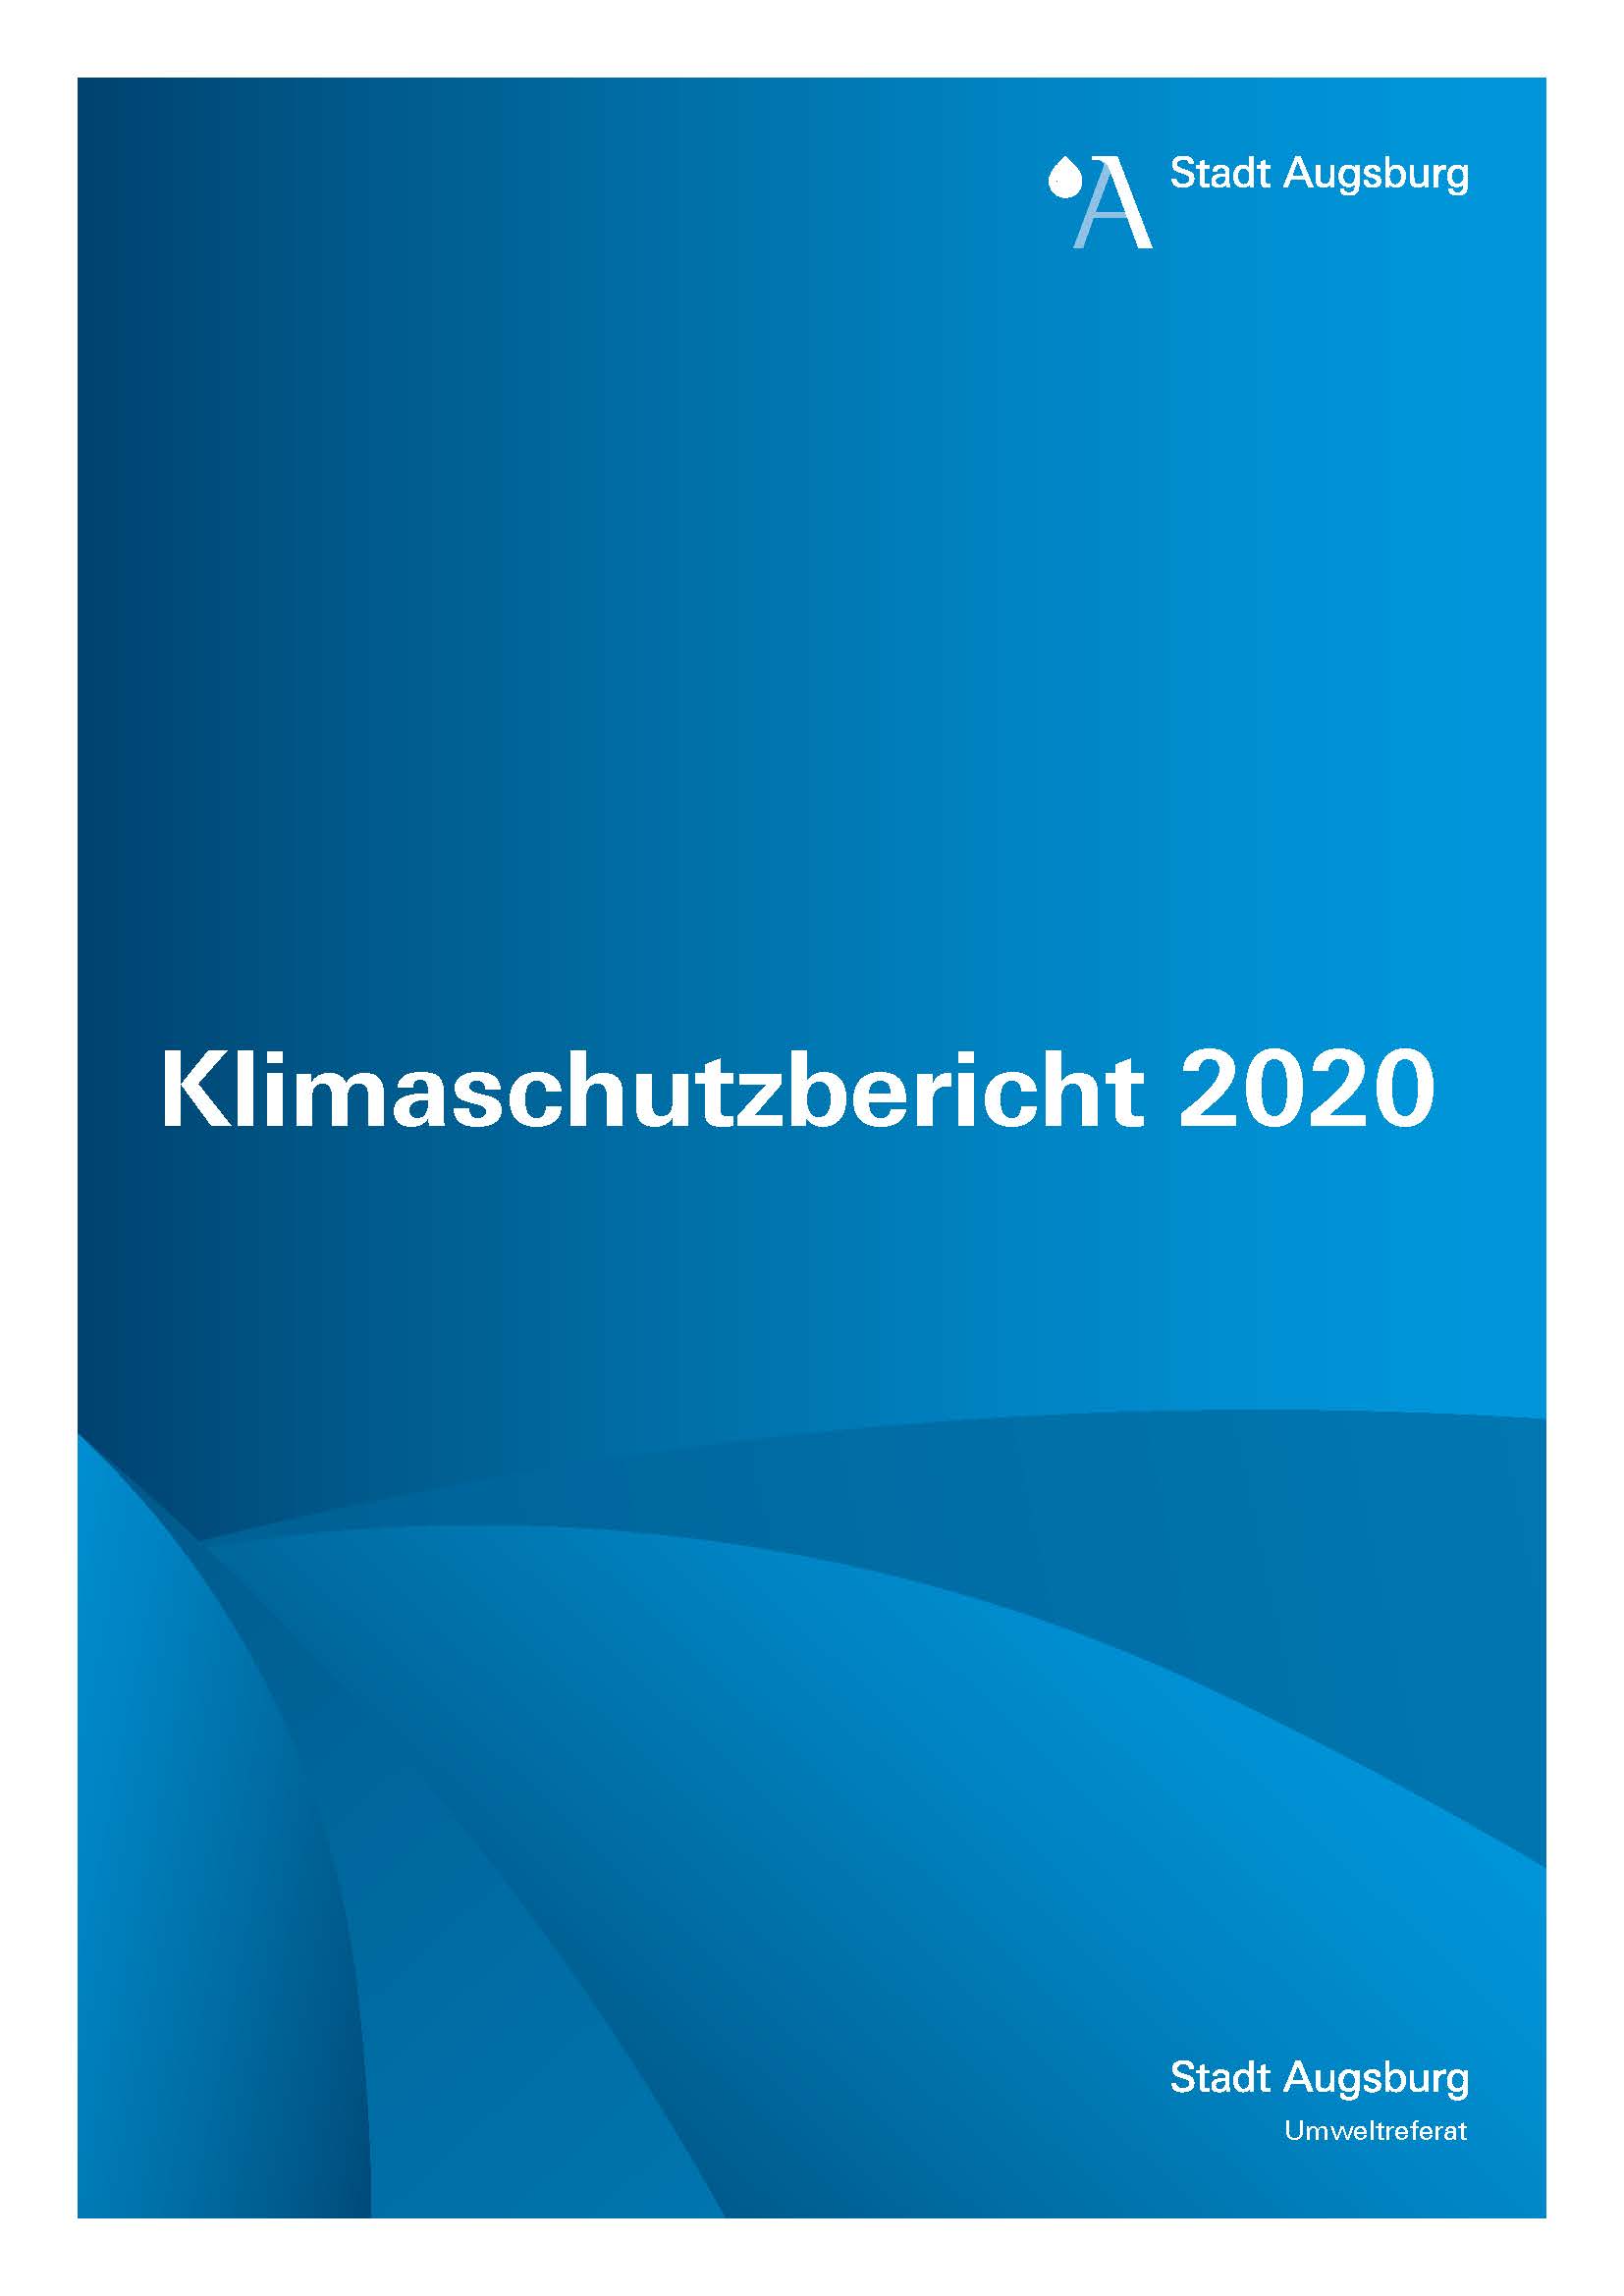 Stadt Augsburg - Klimaschutzbericht 2020